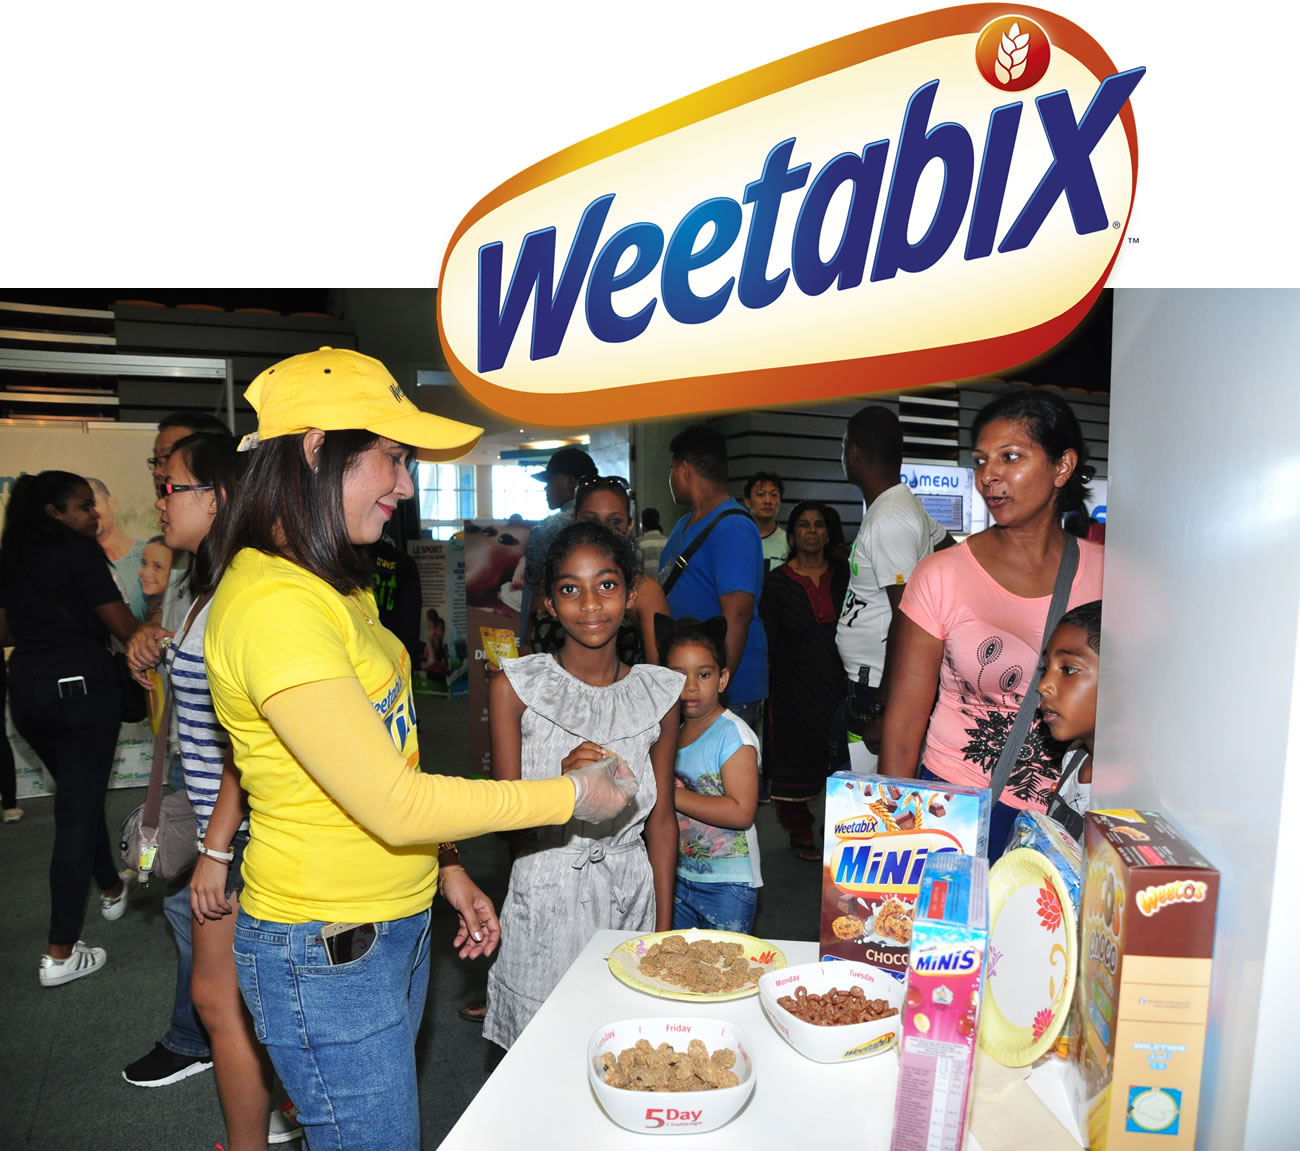 La gamme de céréales de la célèbre marque Weetabix sera présentée au salon.